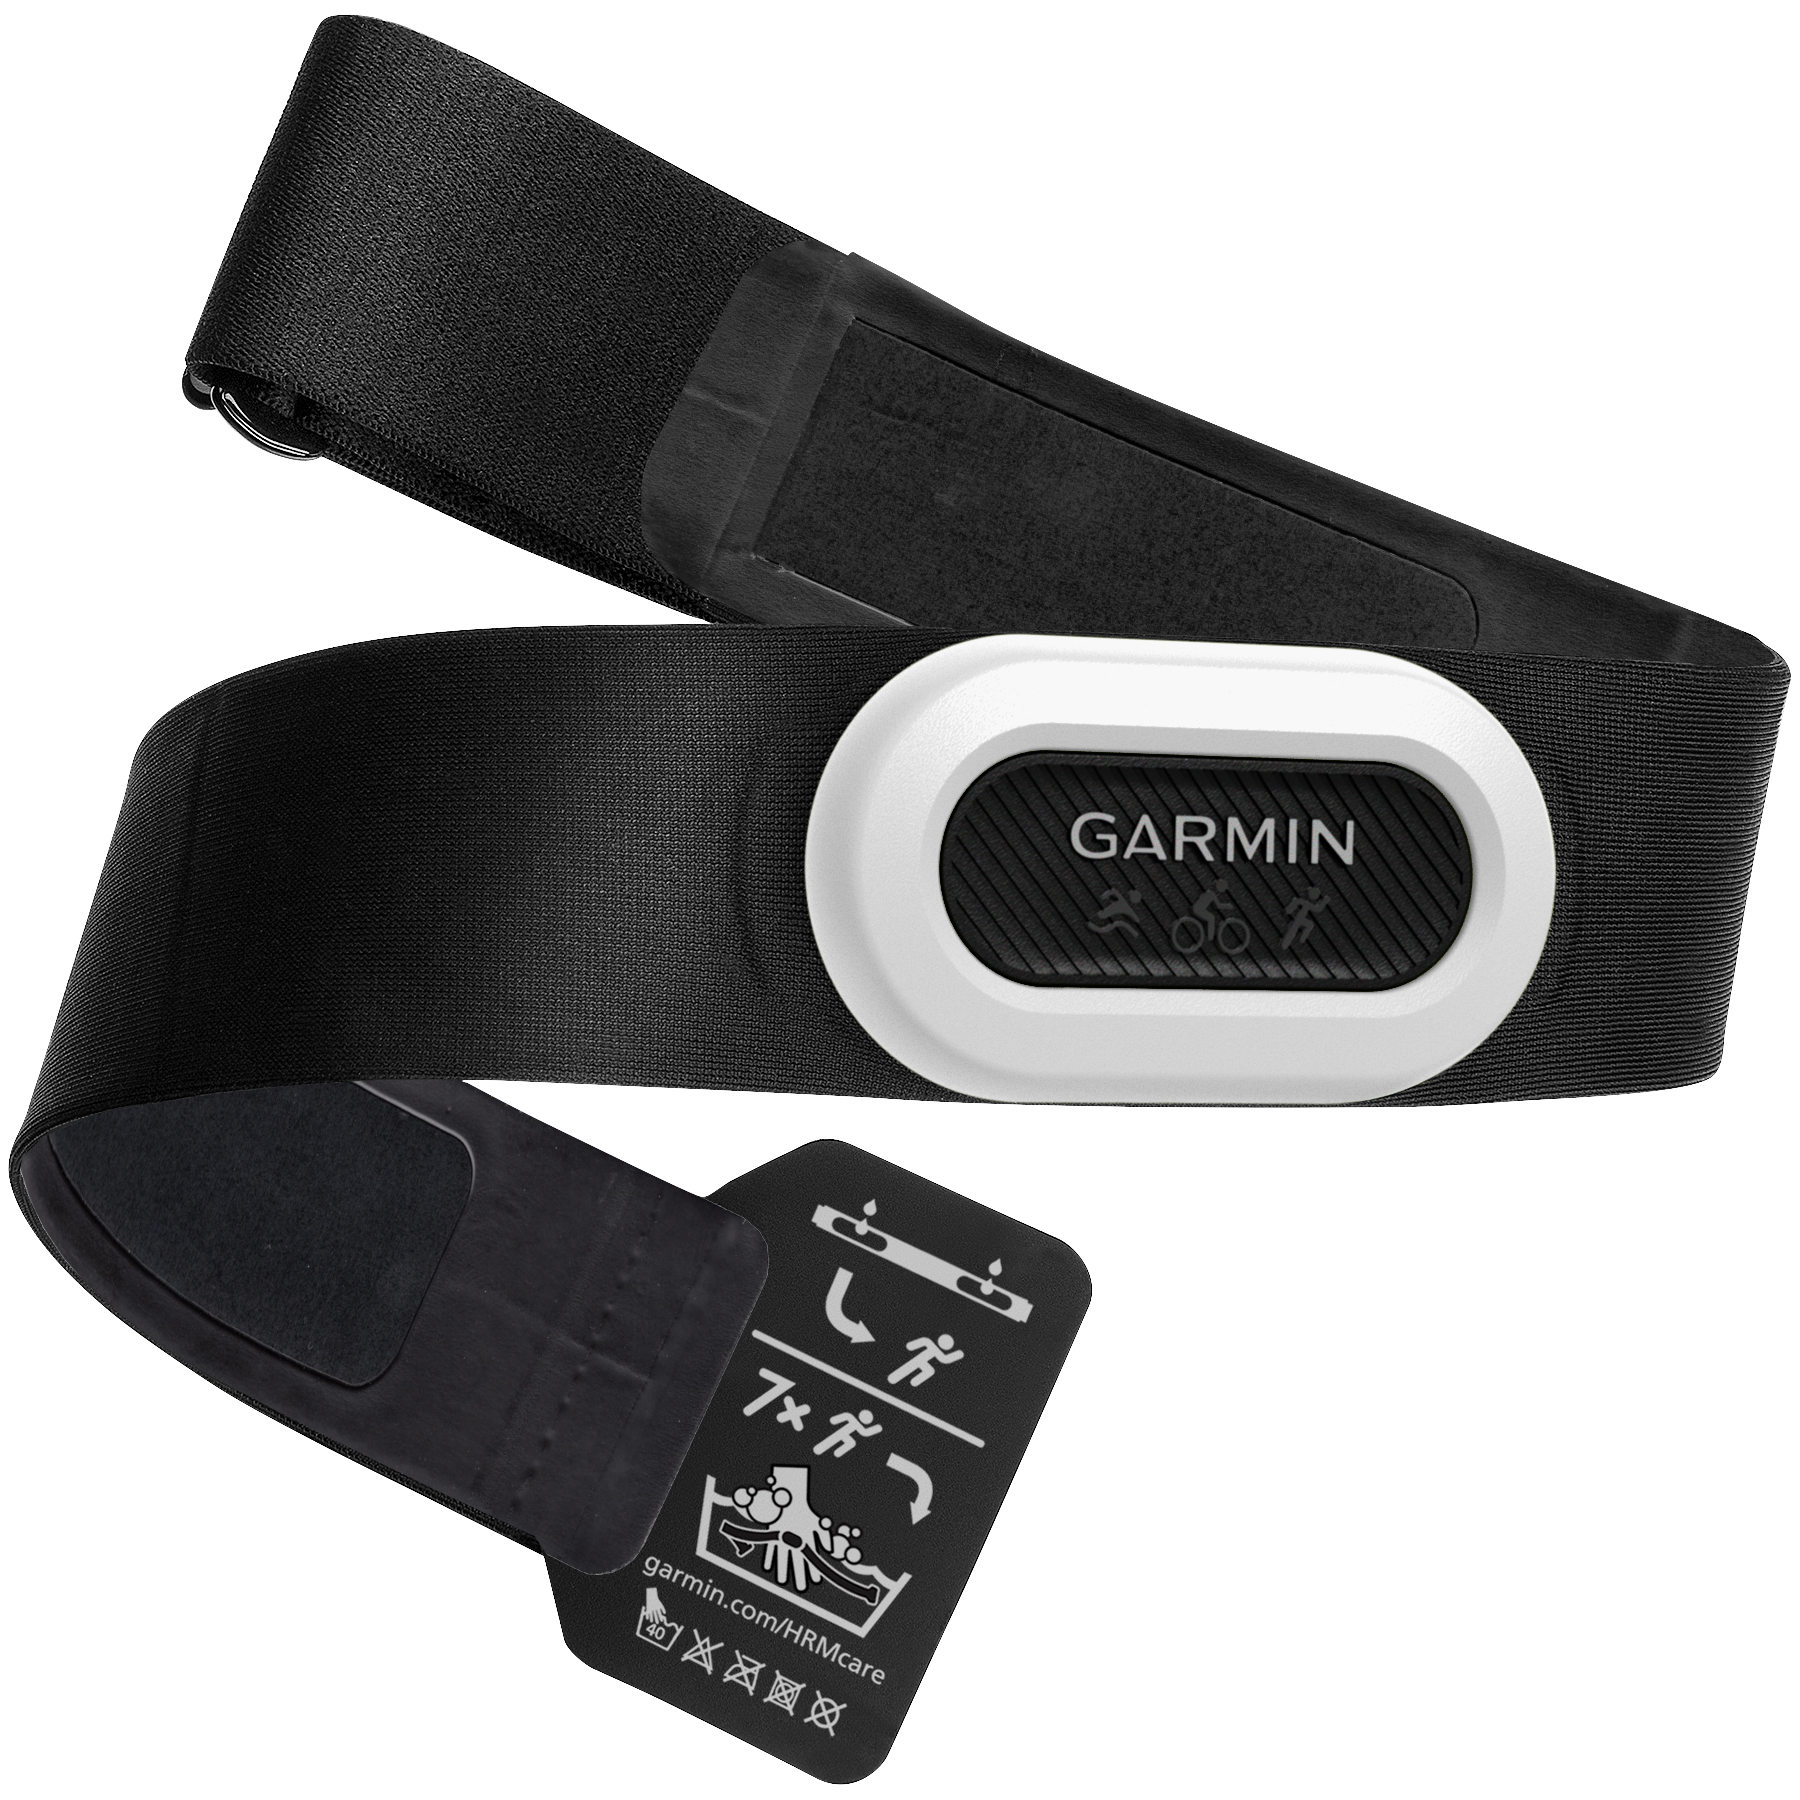 Produktbild von Garmin HRM Pro Plus Herzfrequenzsensor + Brustgurt